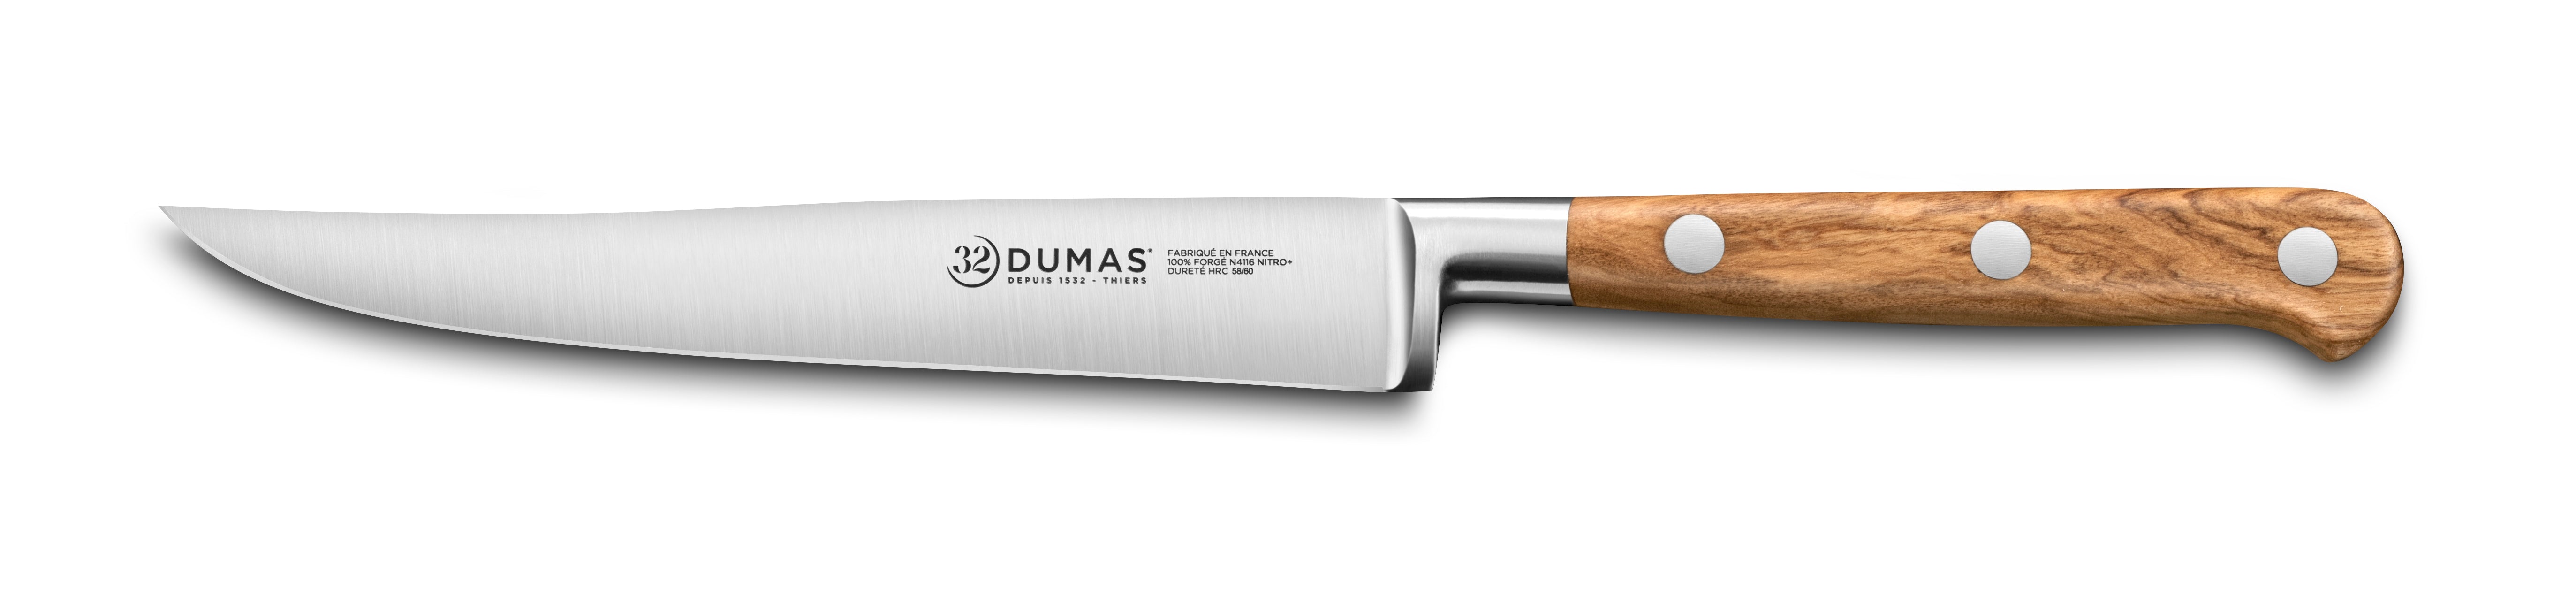 4-Piece Steak Knife Set 8&quot; by 32 Dumas